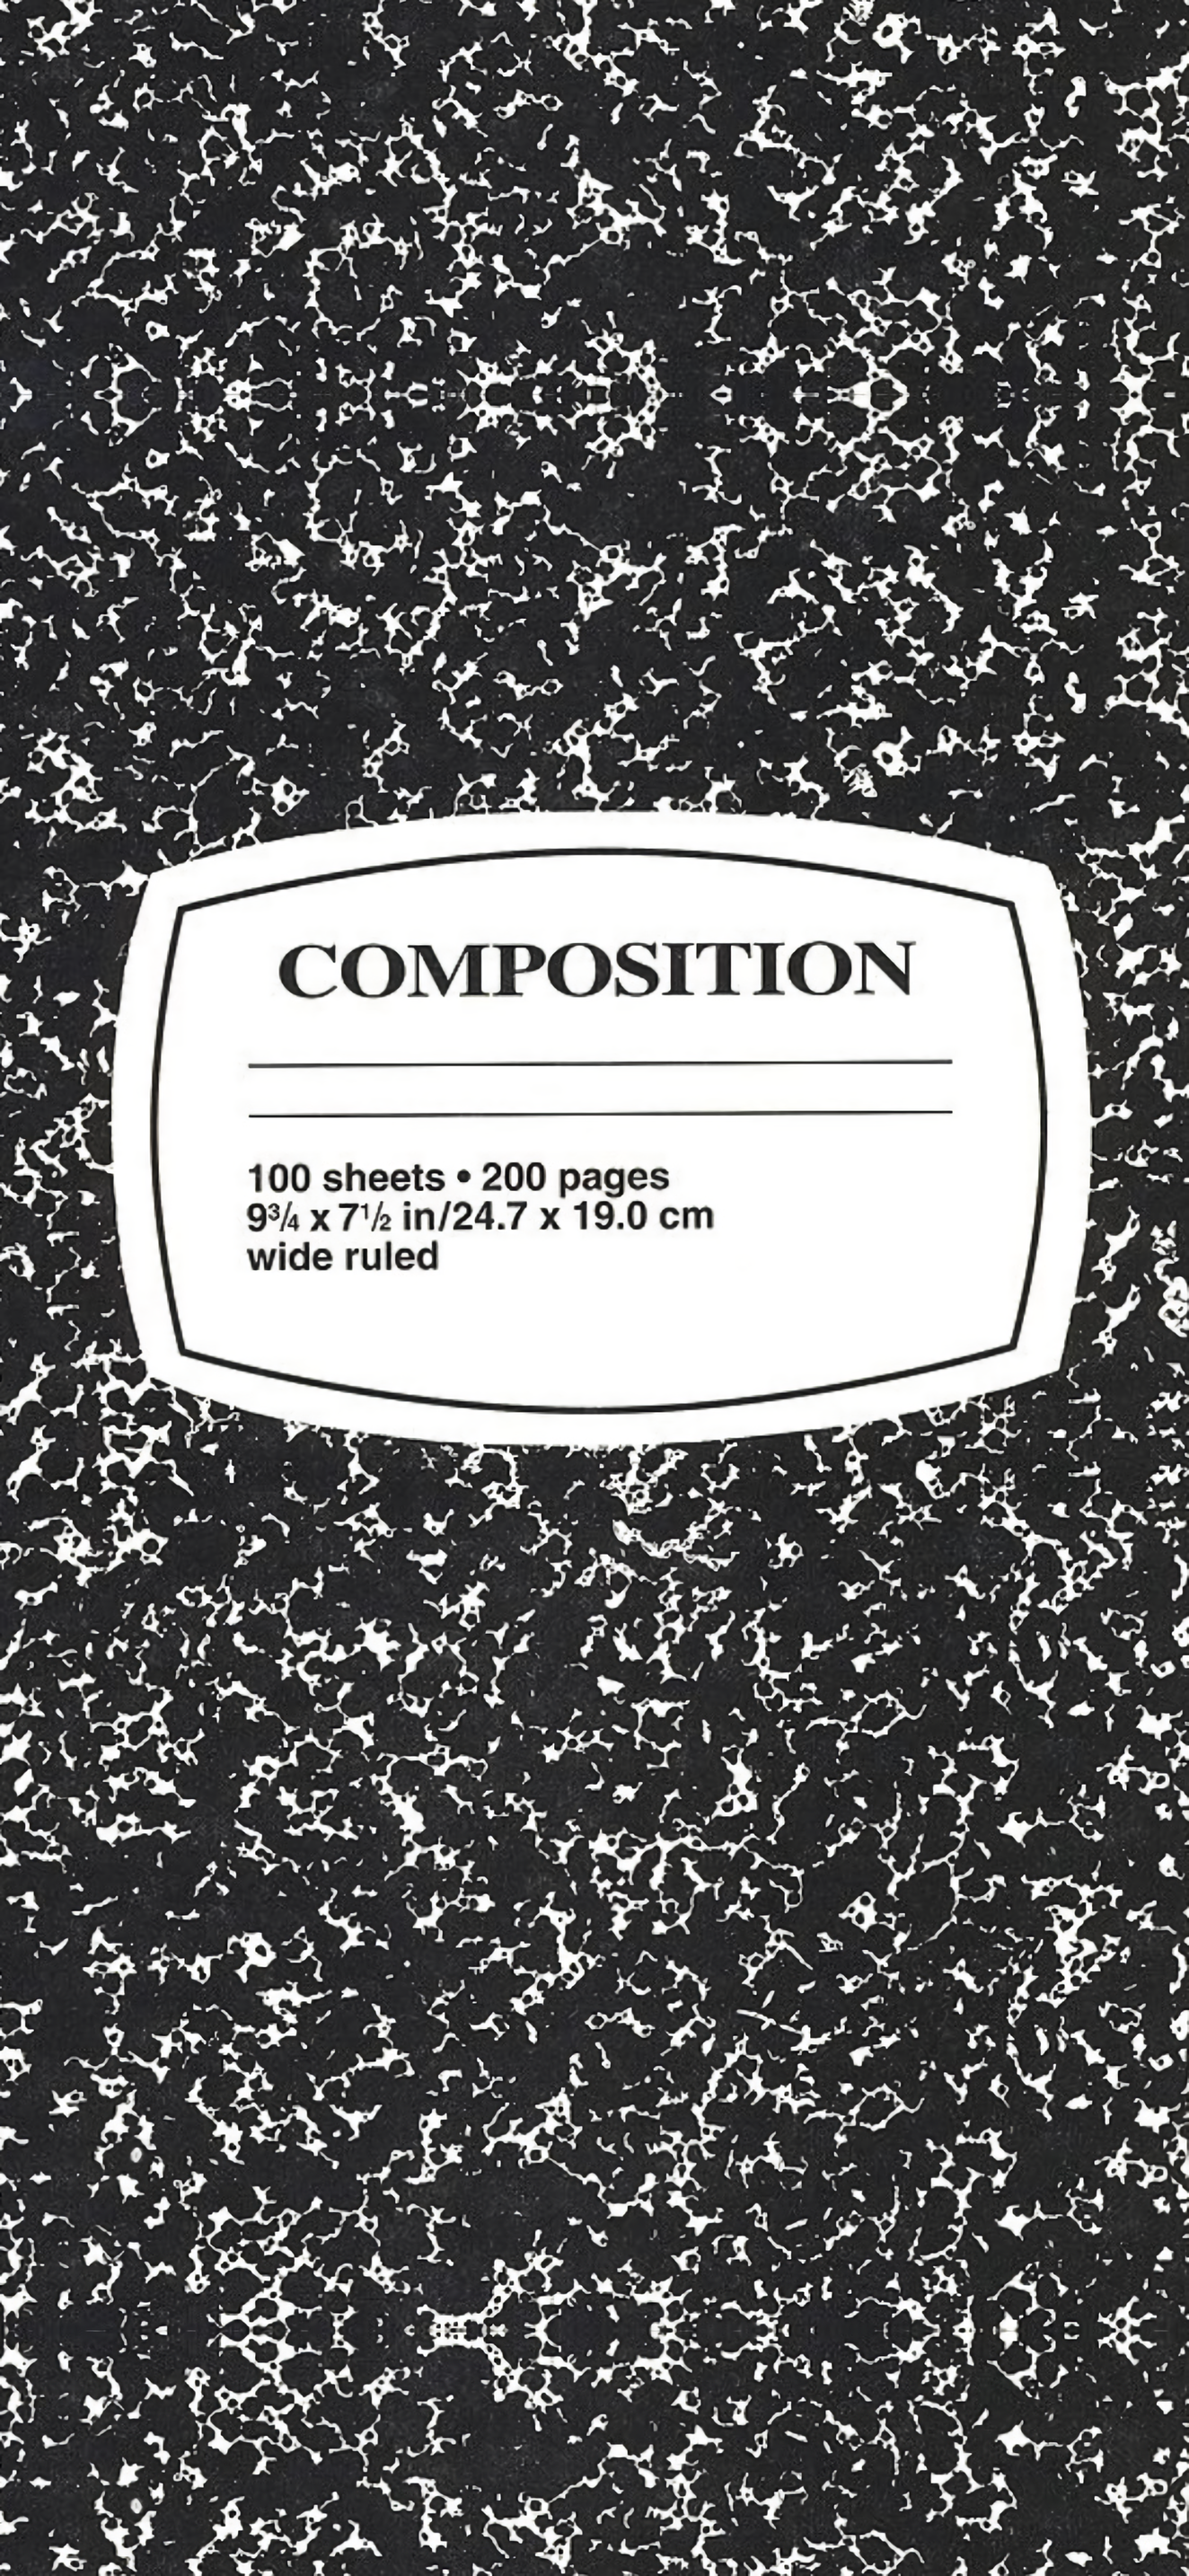 plain composition book. Book cover art diy, Composition book, Book wallpaper